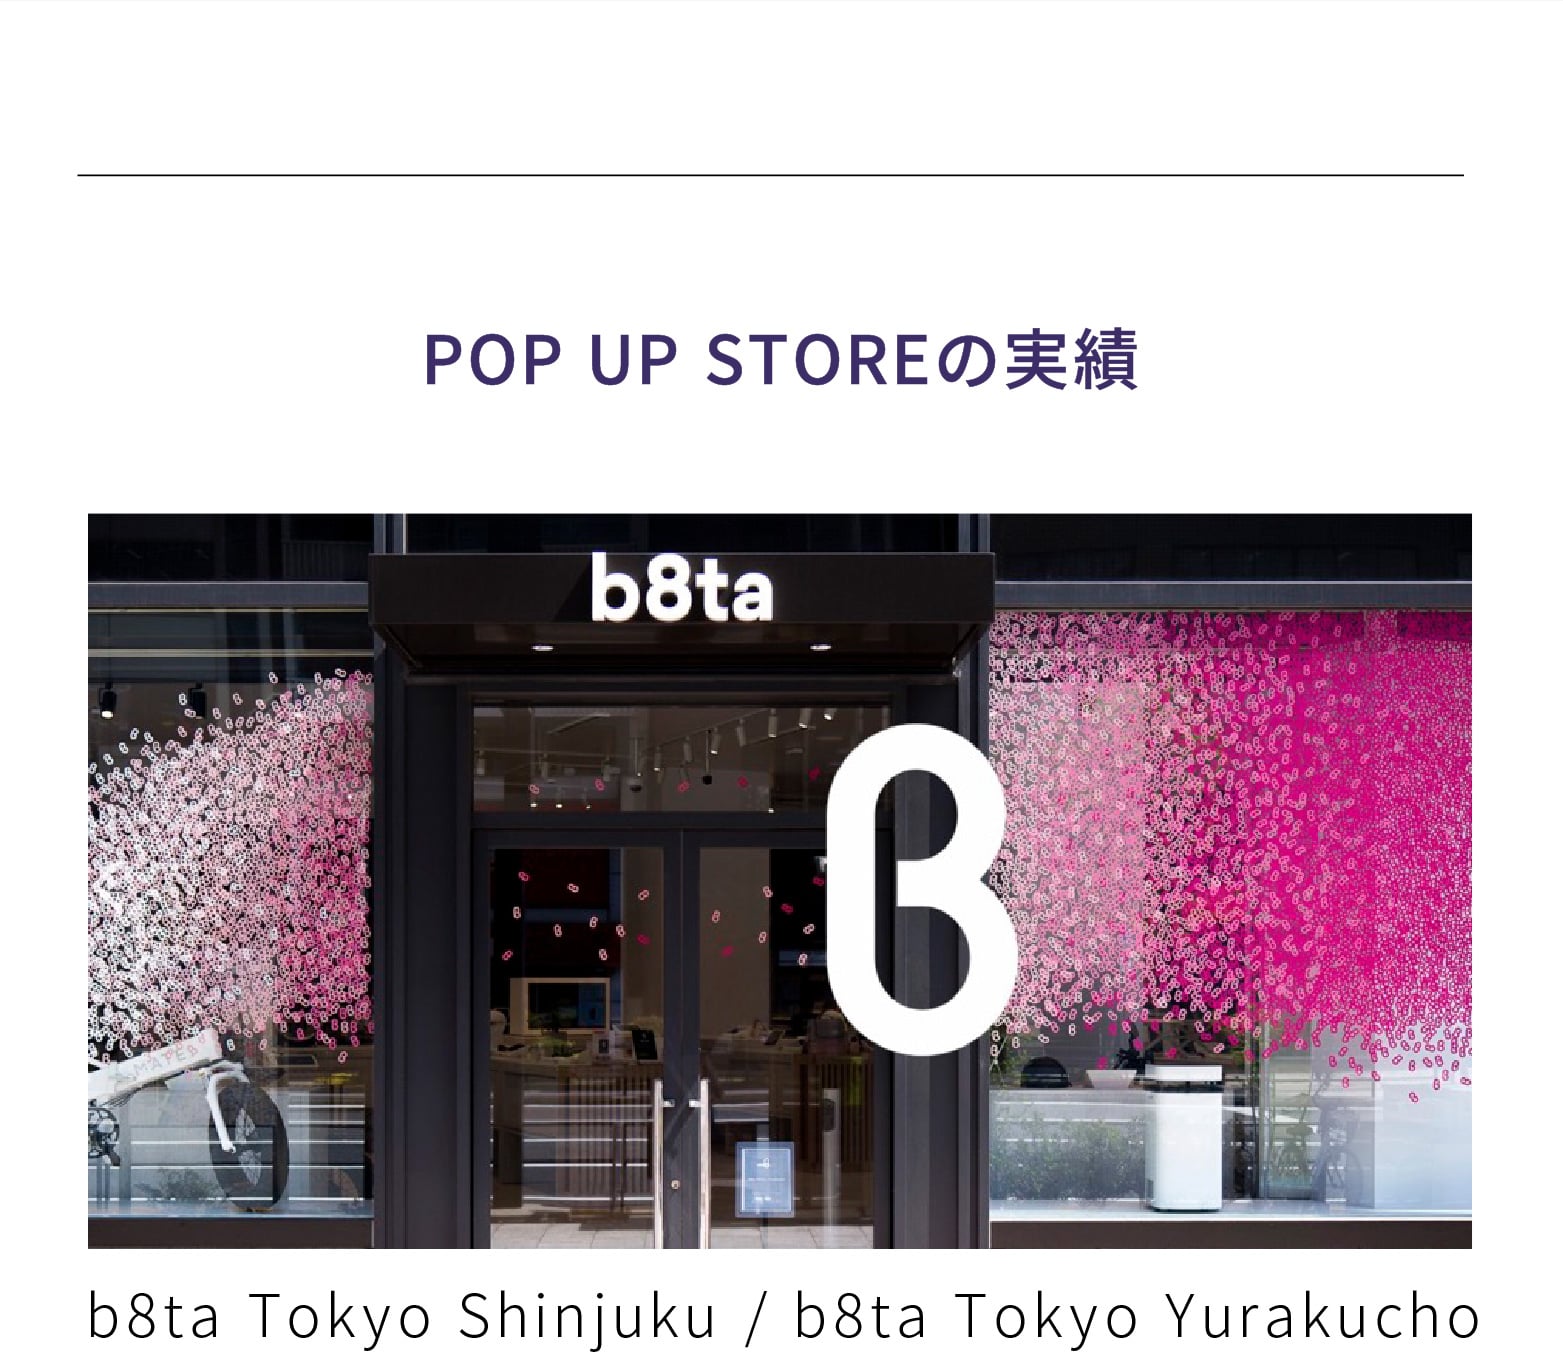 POP UP STOREの実績 b8ta Tokyo Shinjuku / b8ta Tokyo Yurakucho